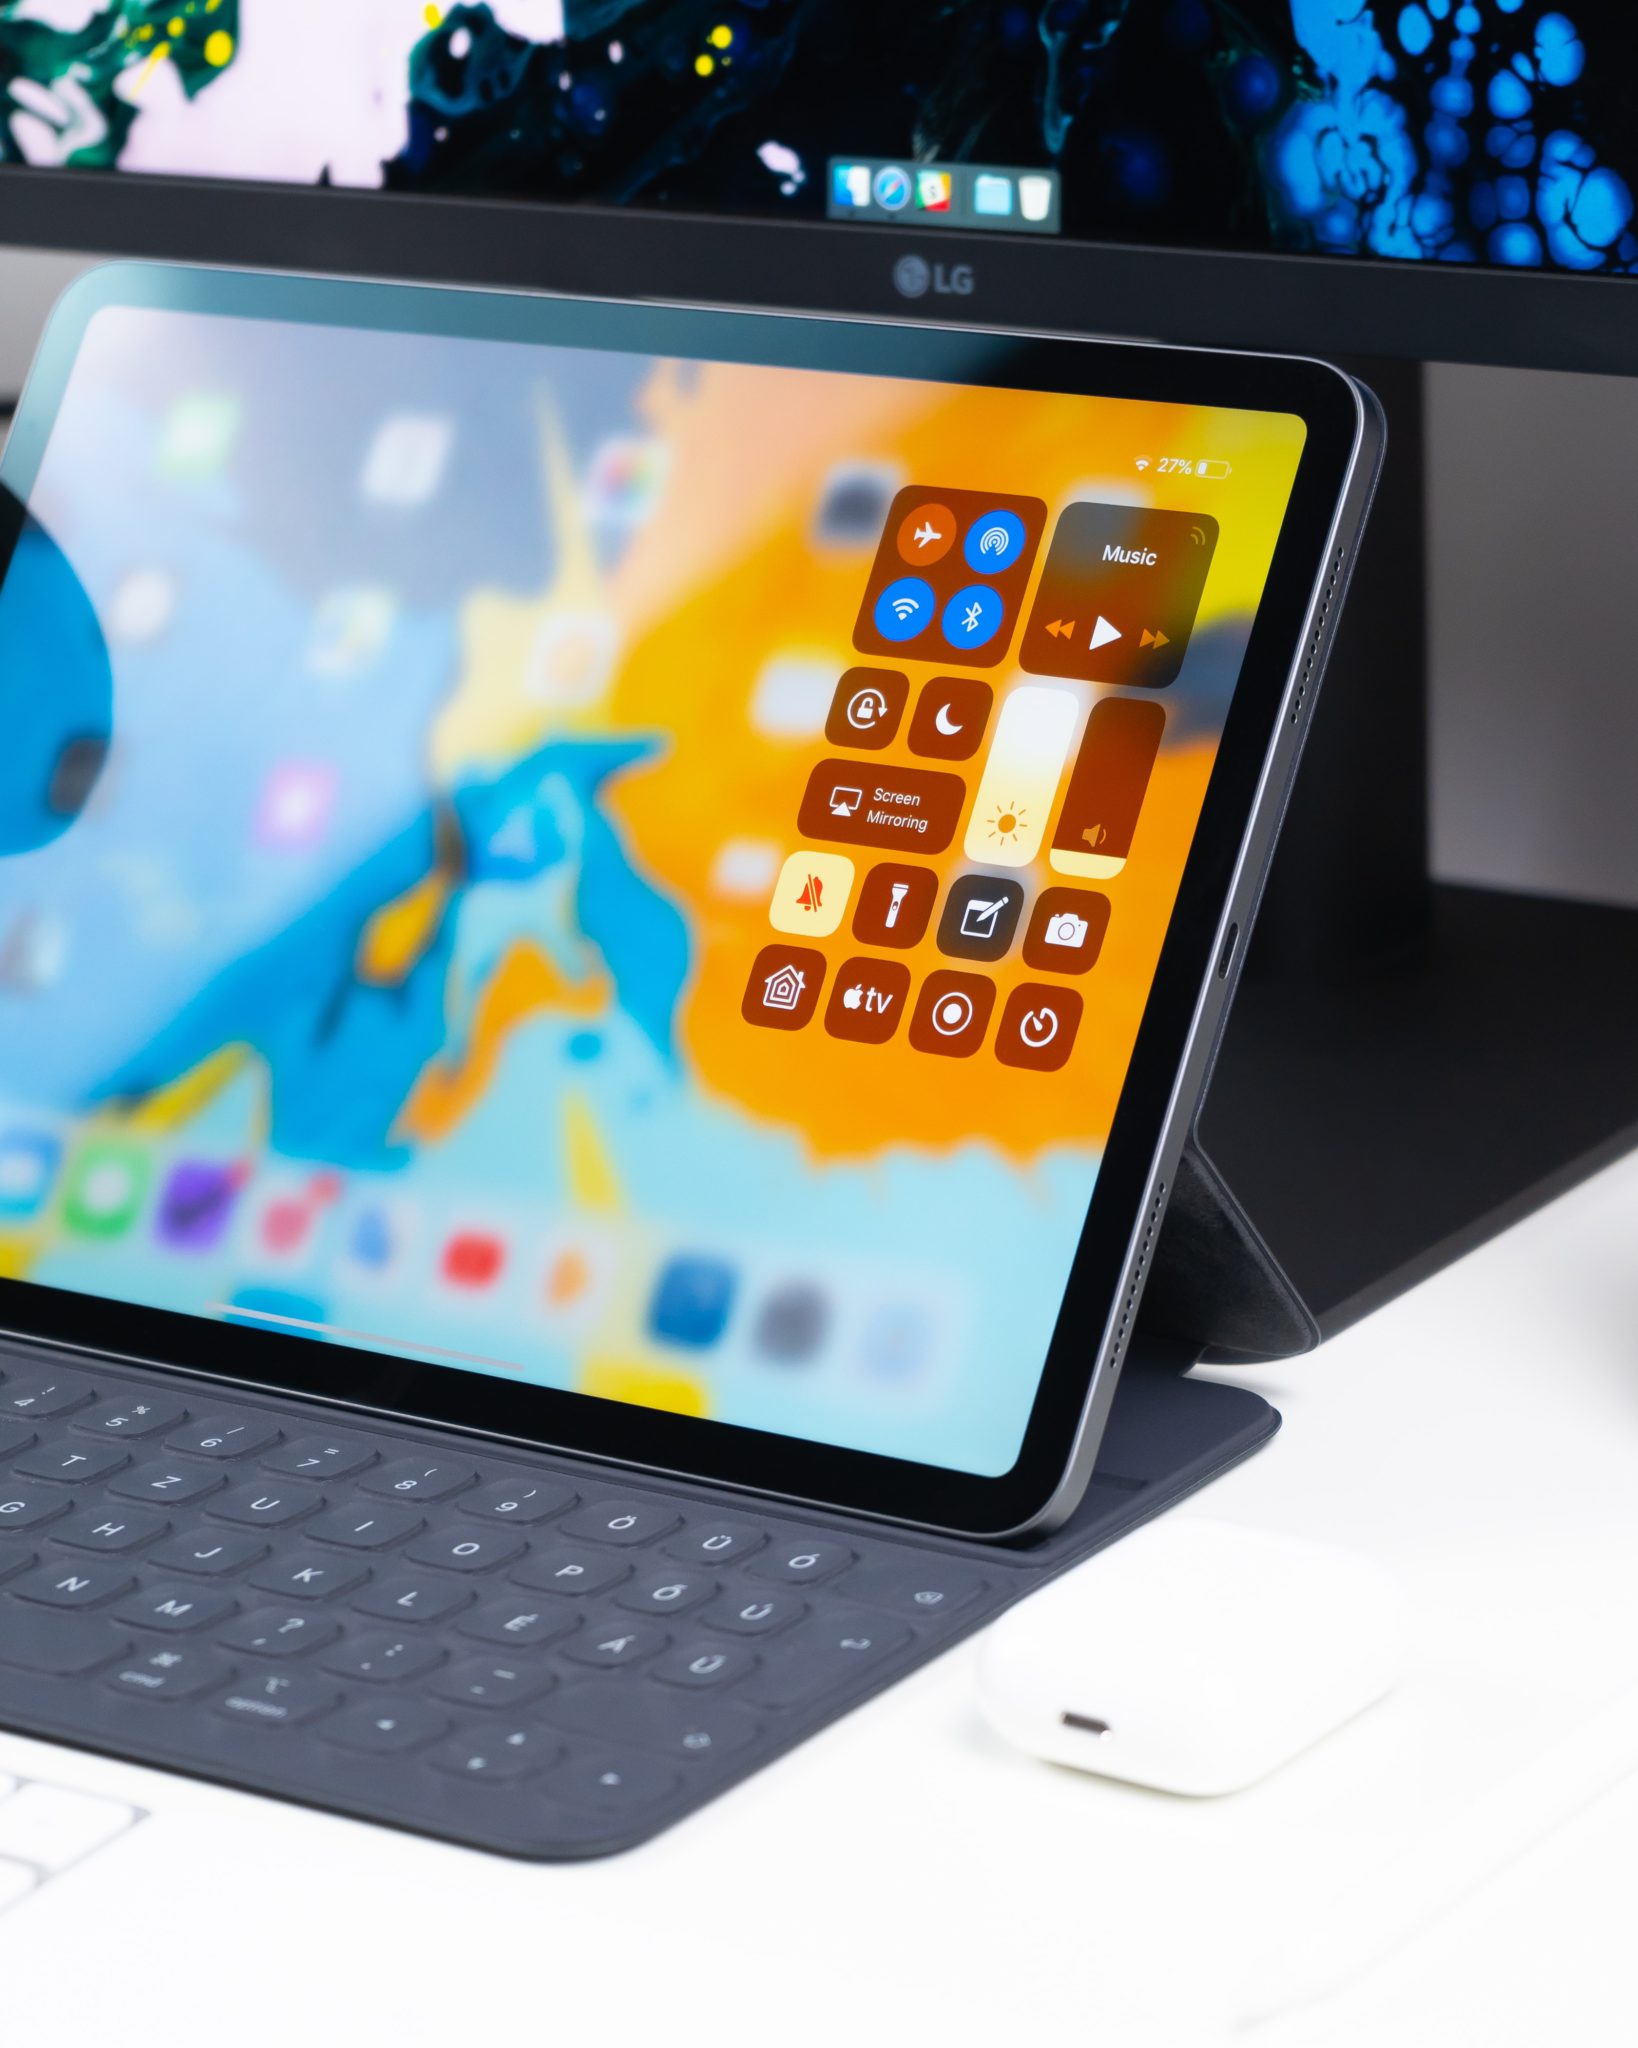 iPad with a keyboard